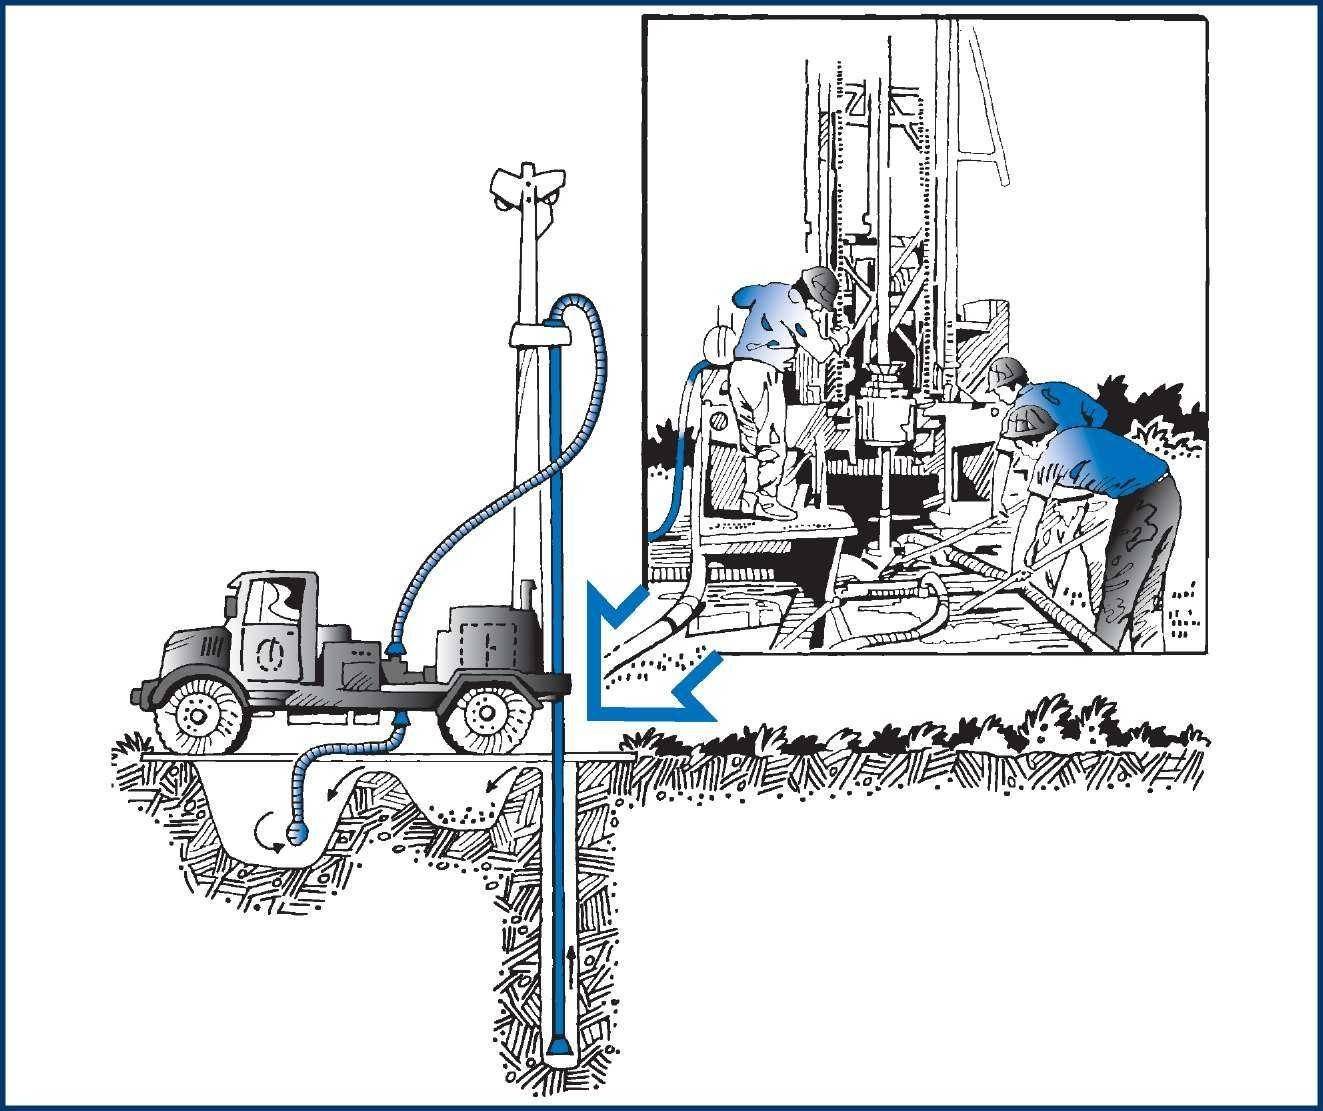 Методы бурения скважин на воду: описание способа, применение